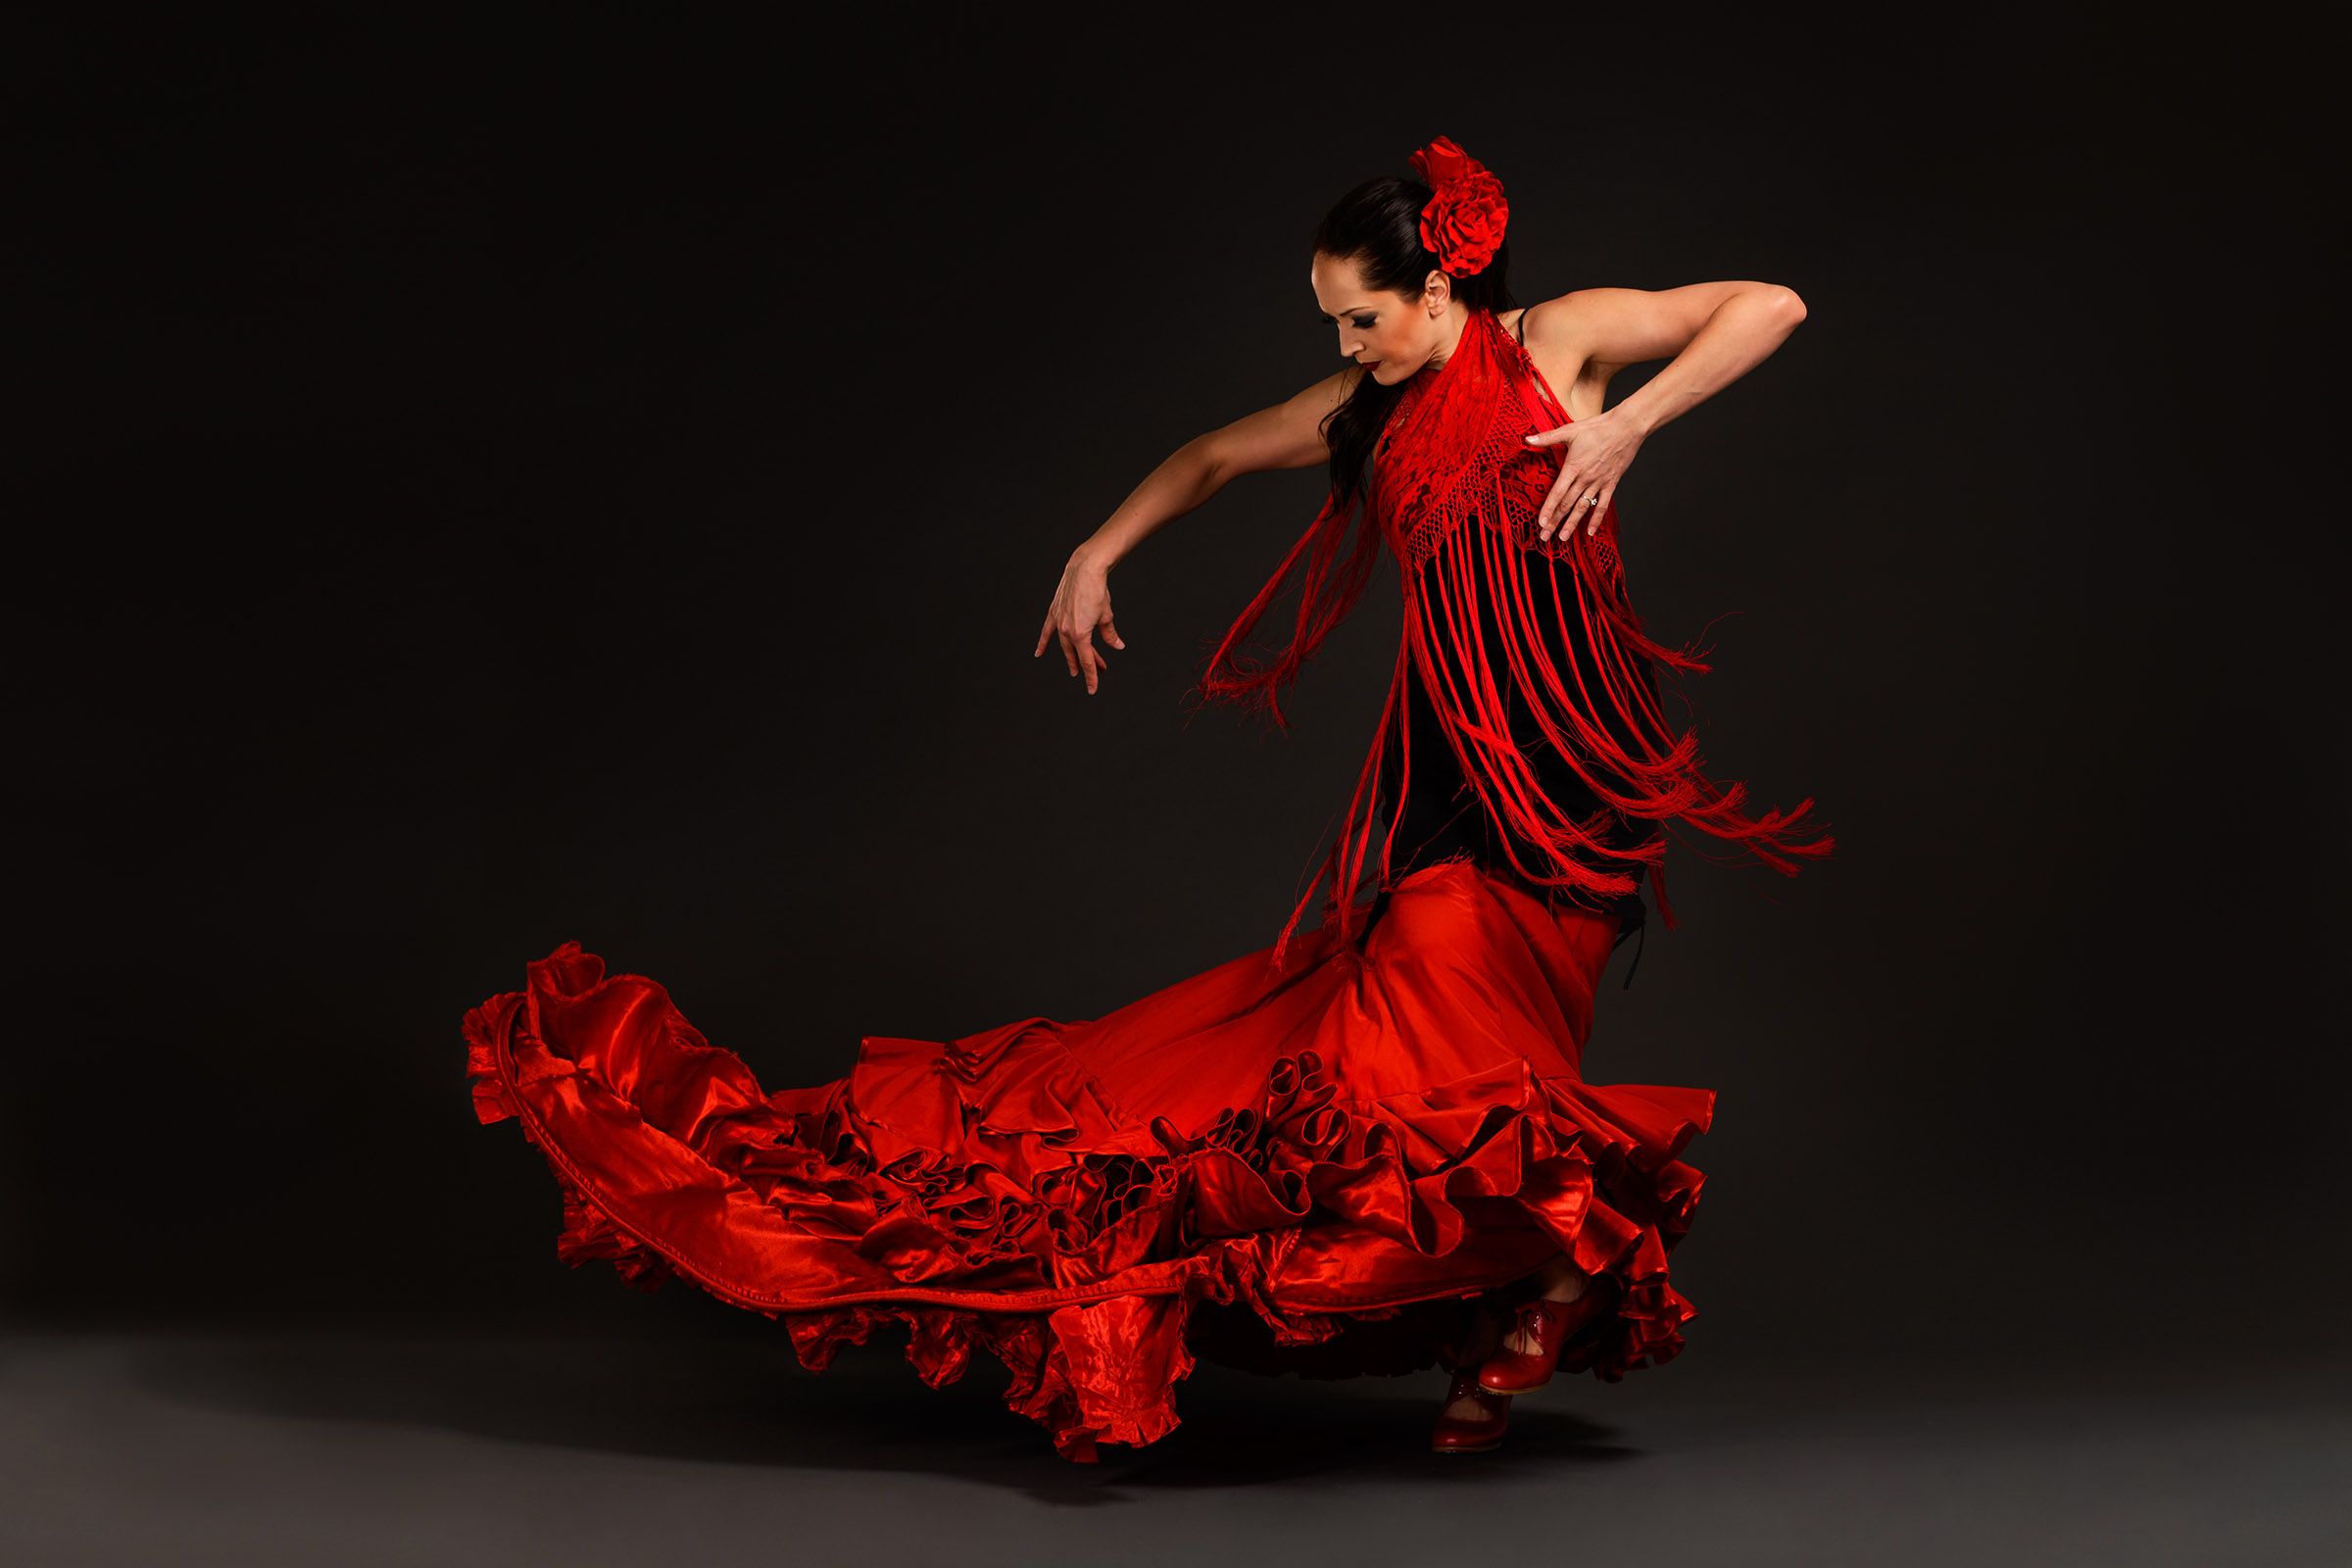 Fondos de flamenco de alta calidad | Descargar gratis